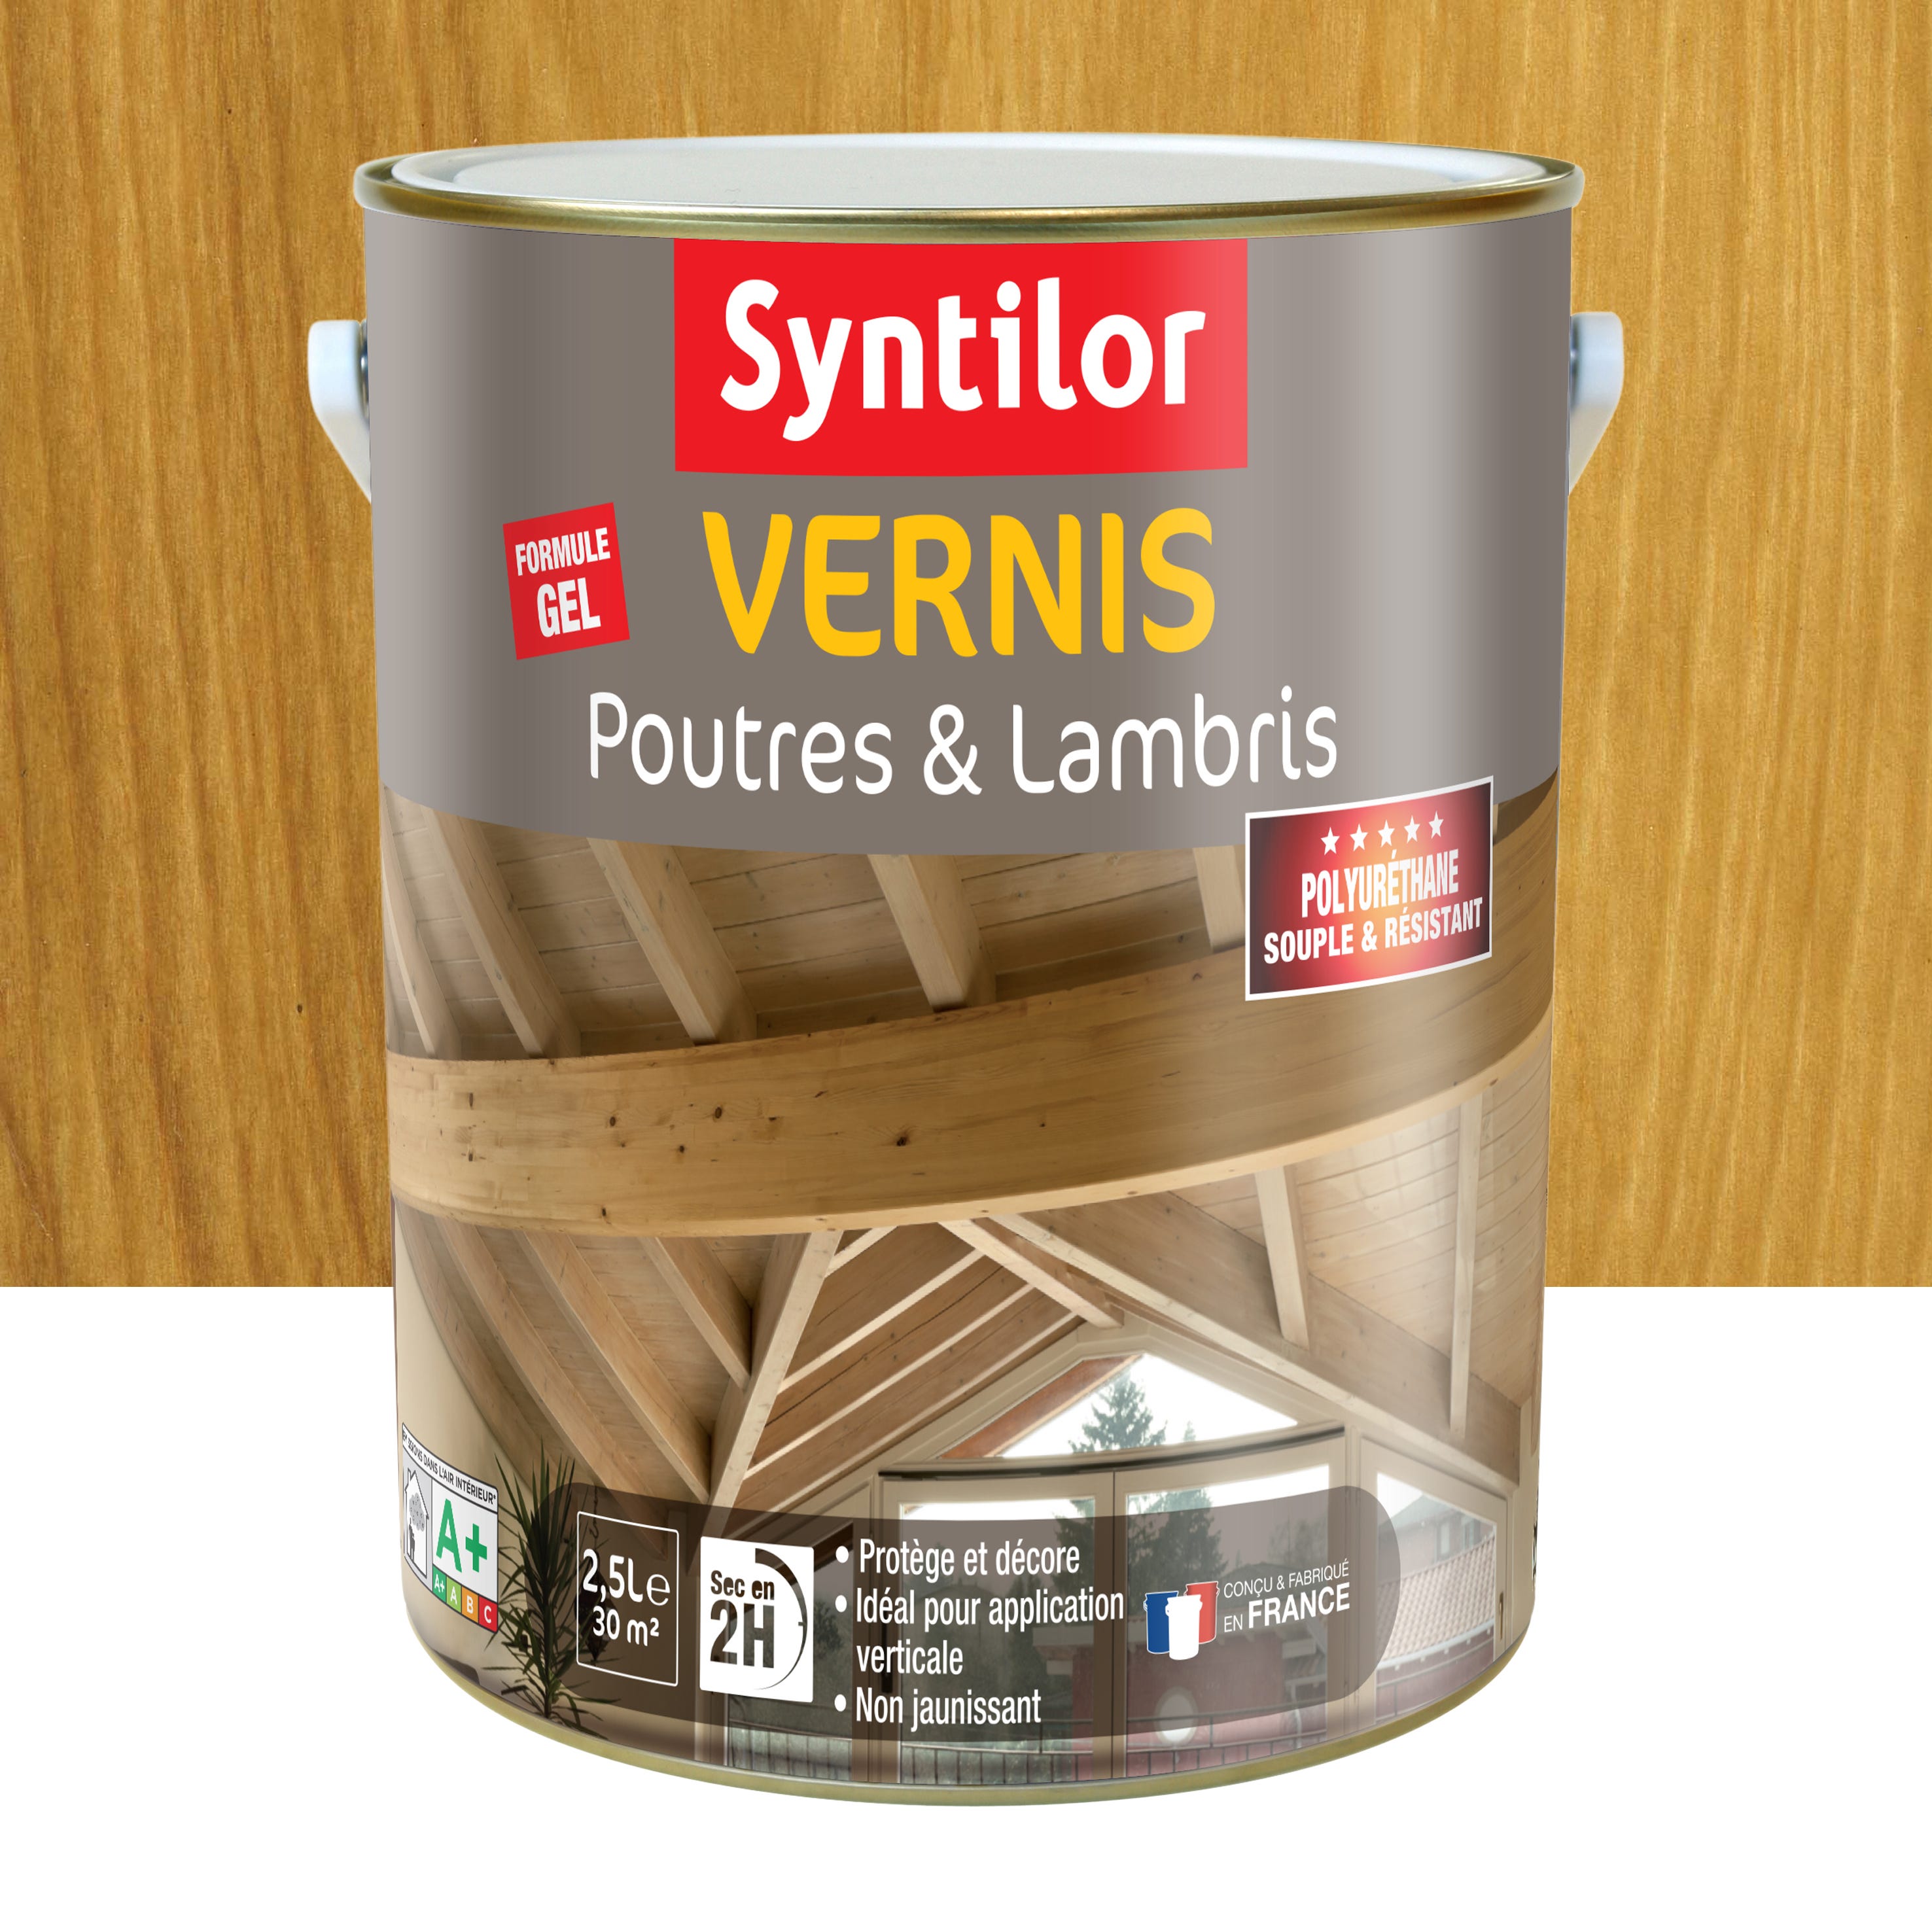 Vernis mat / Vernis brillant / vernis satiné - qualité professionnelle -  Vernis 100 % acrylique pour une bonne protection